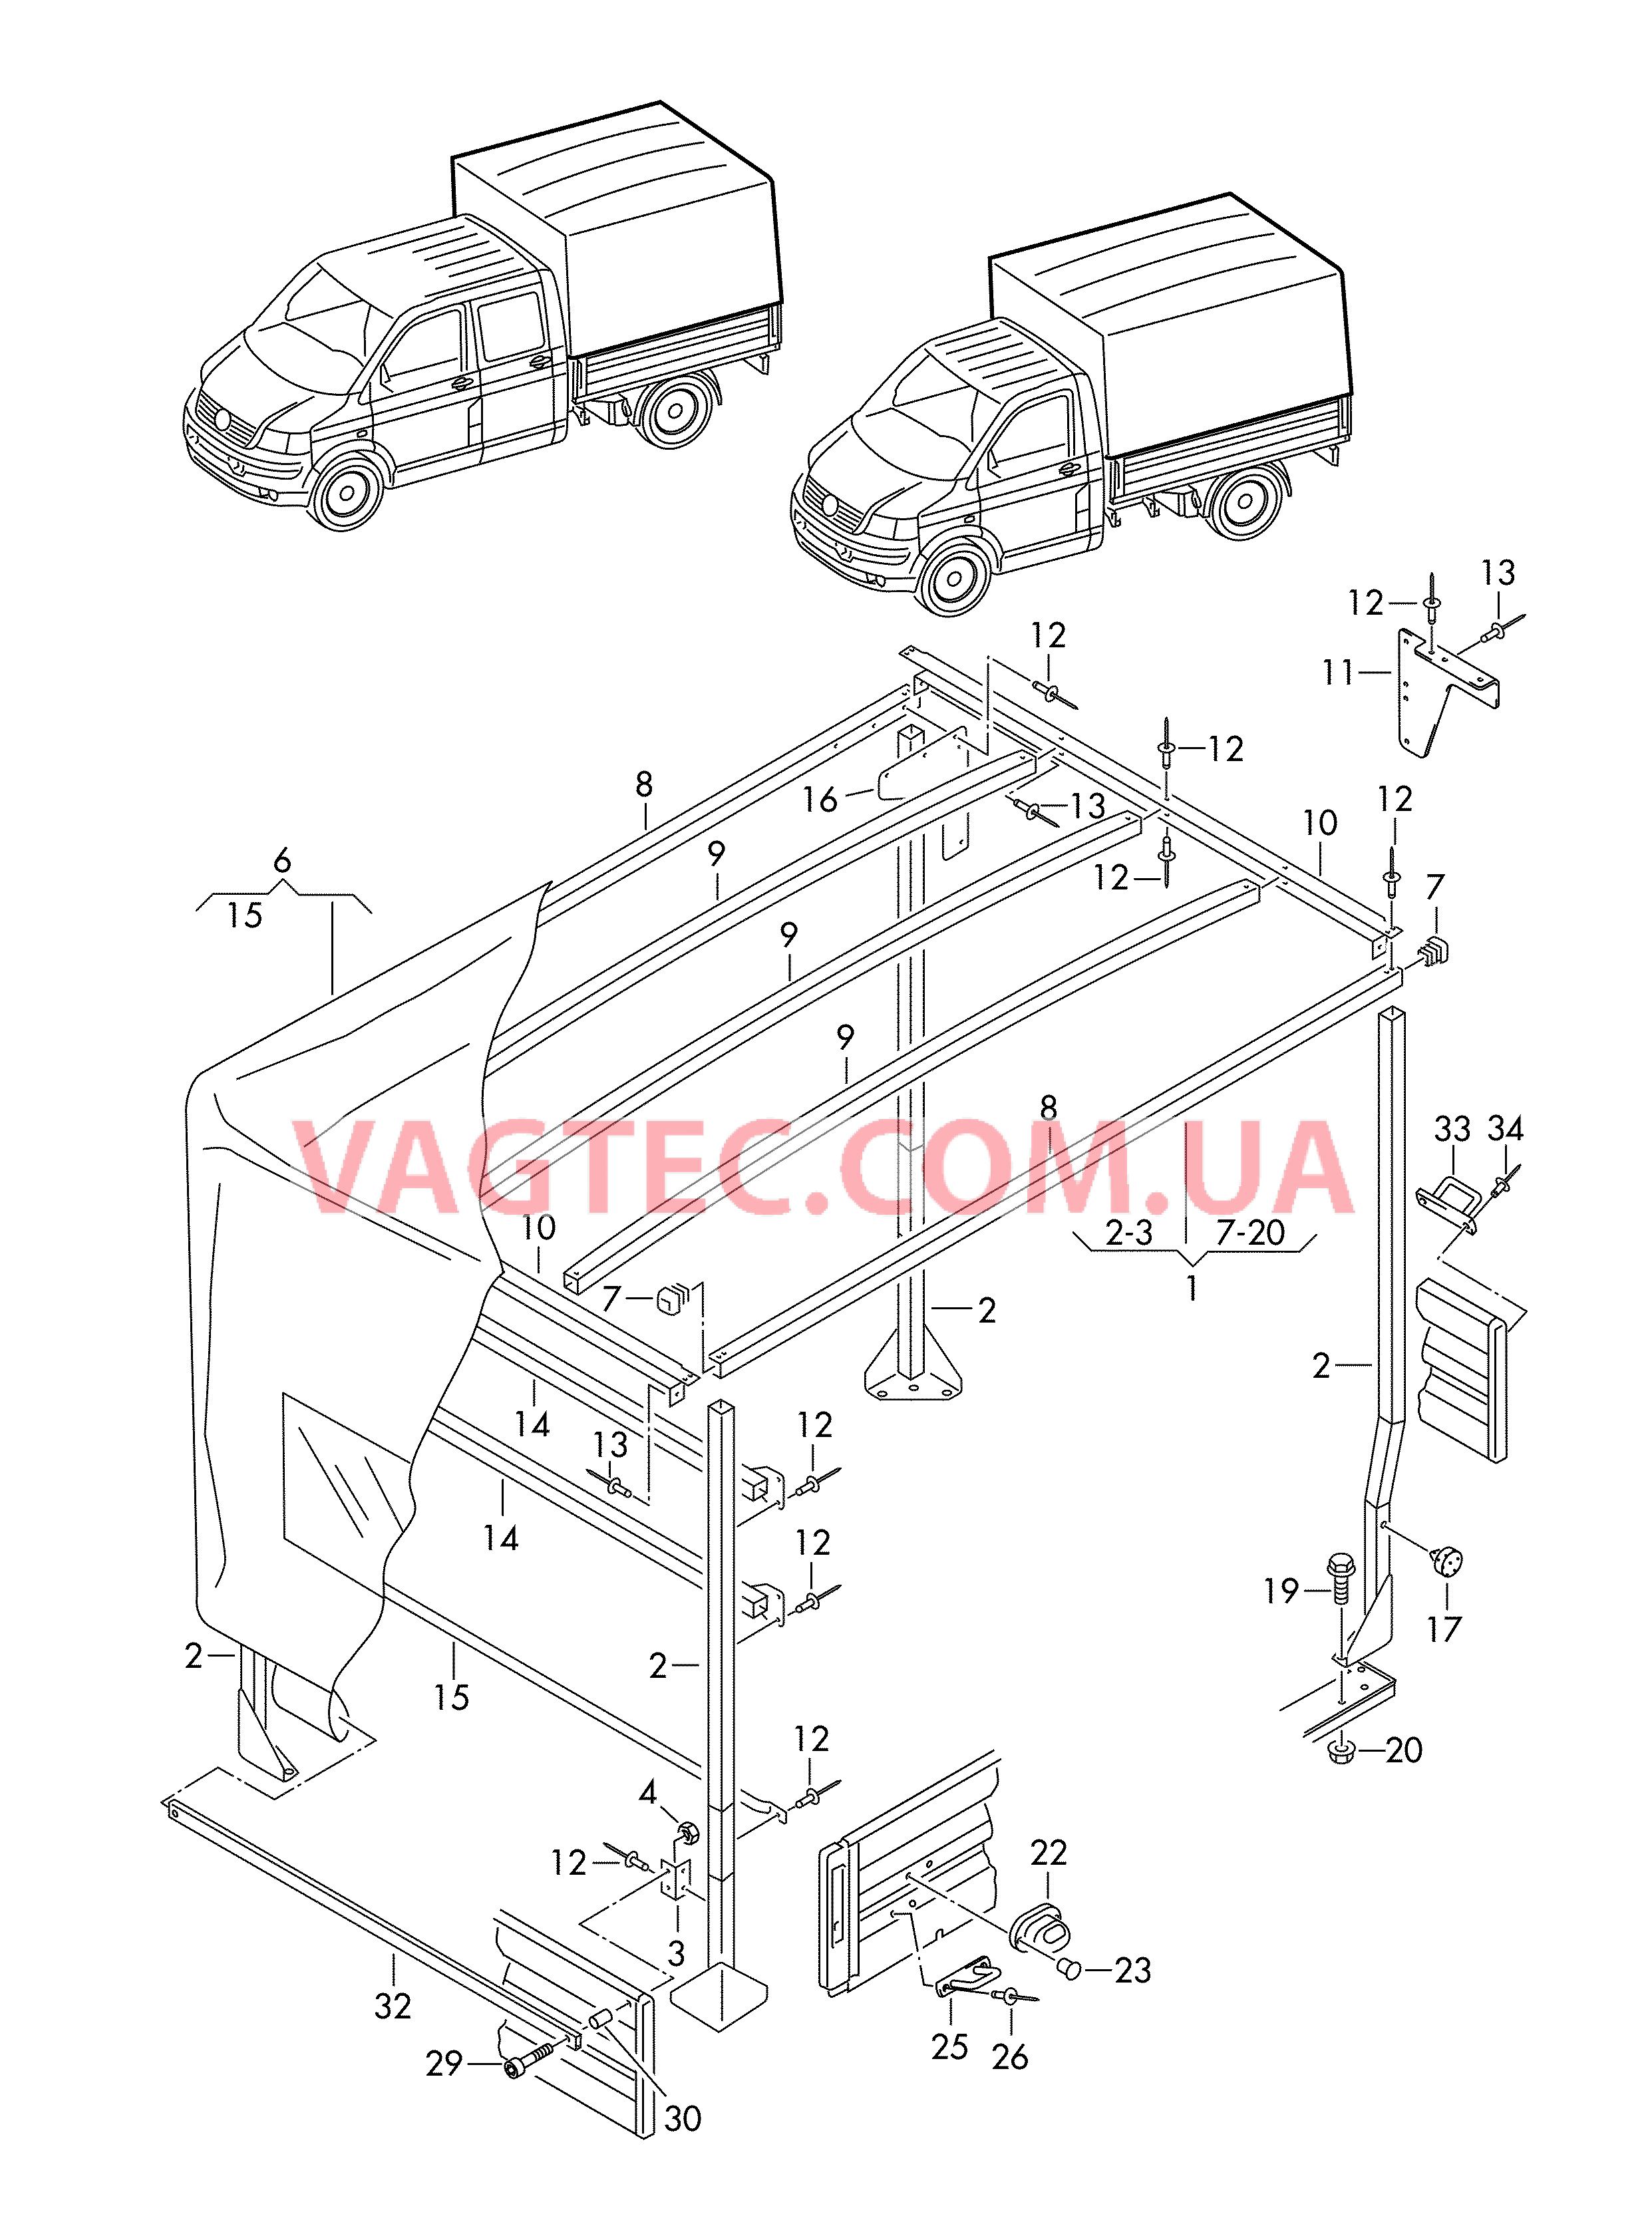 Каркас складной крыши с тентом и деталями крепления  для VOLKSWAGEN Transporter 2006-1